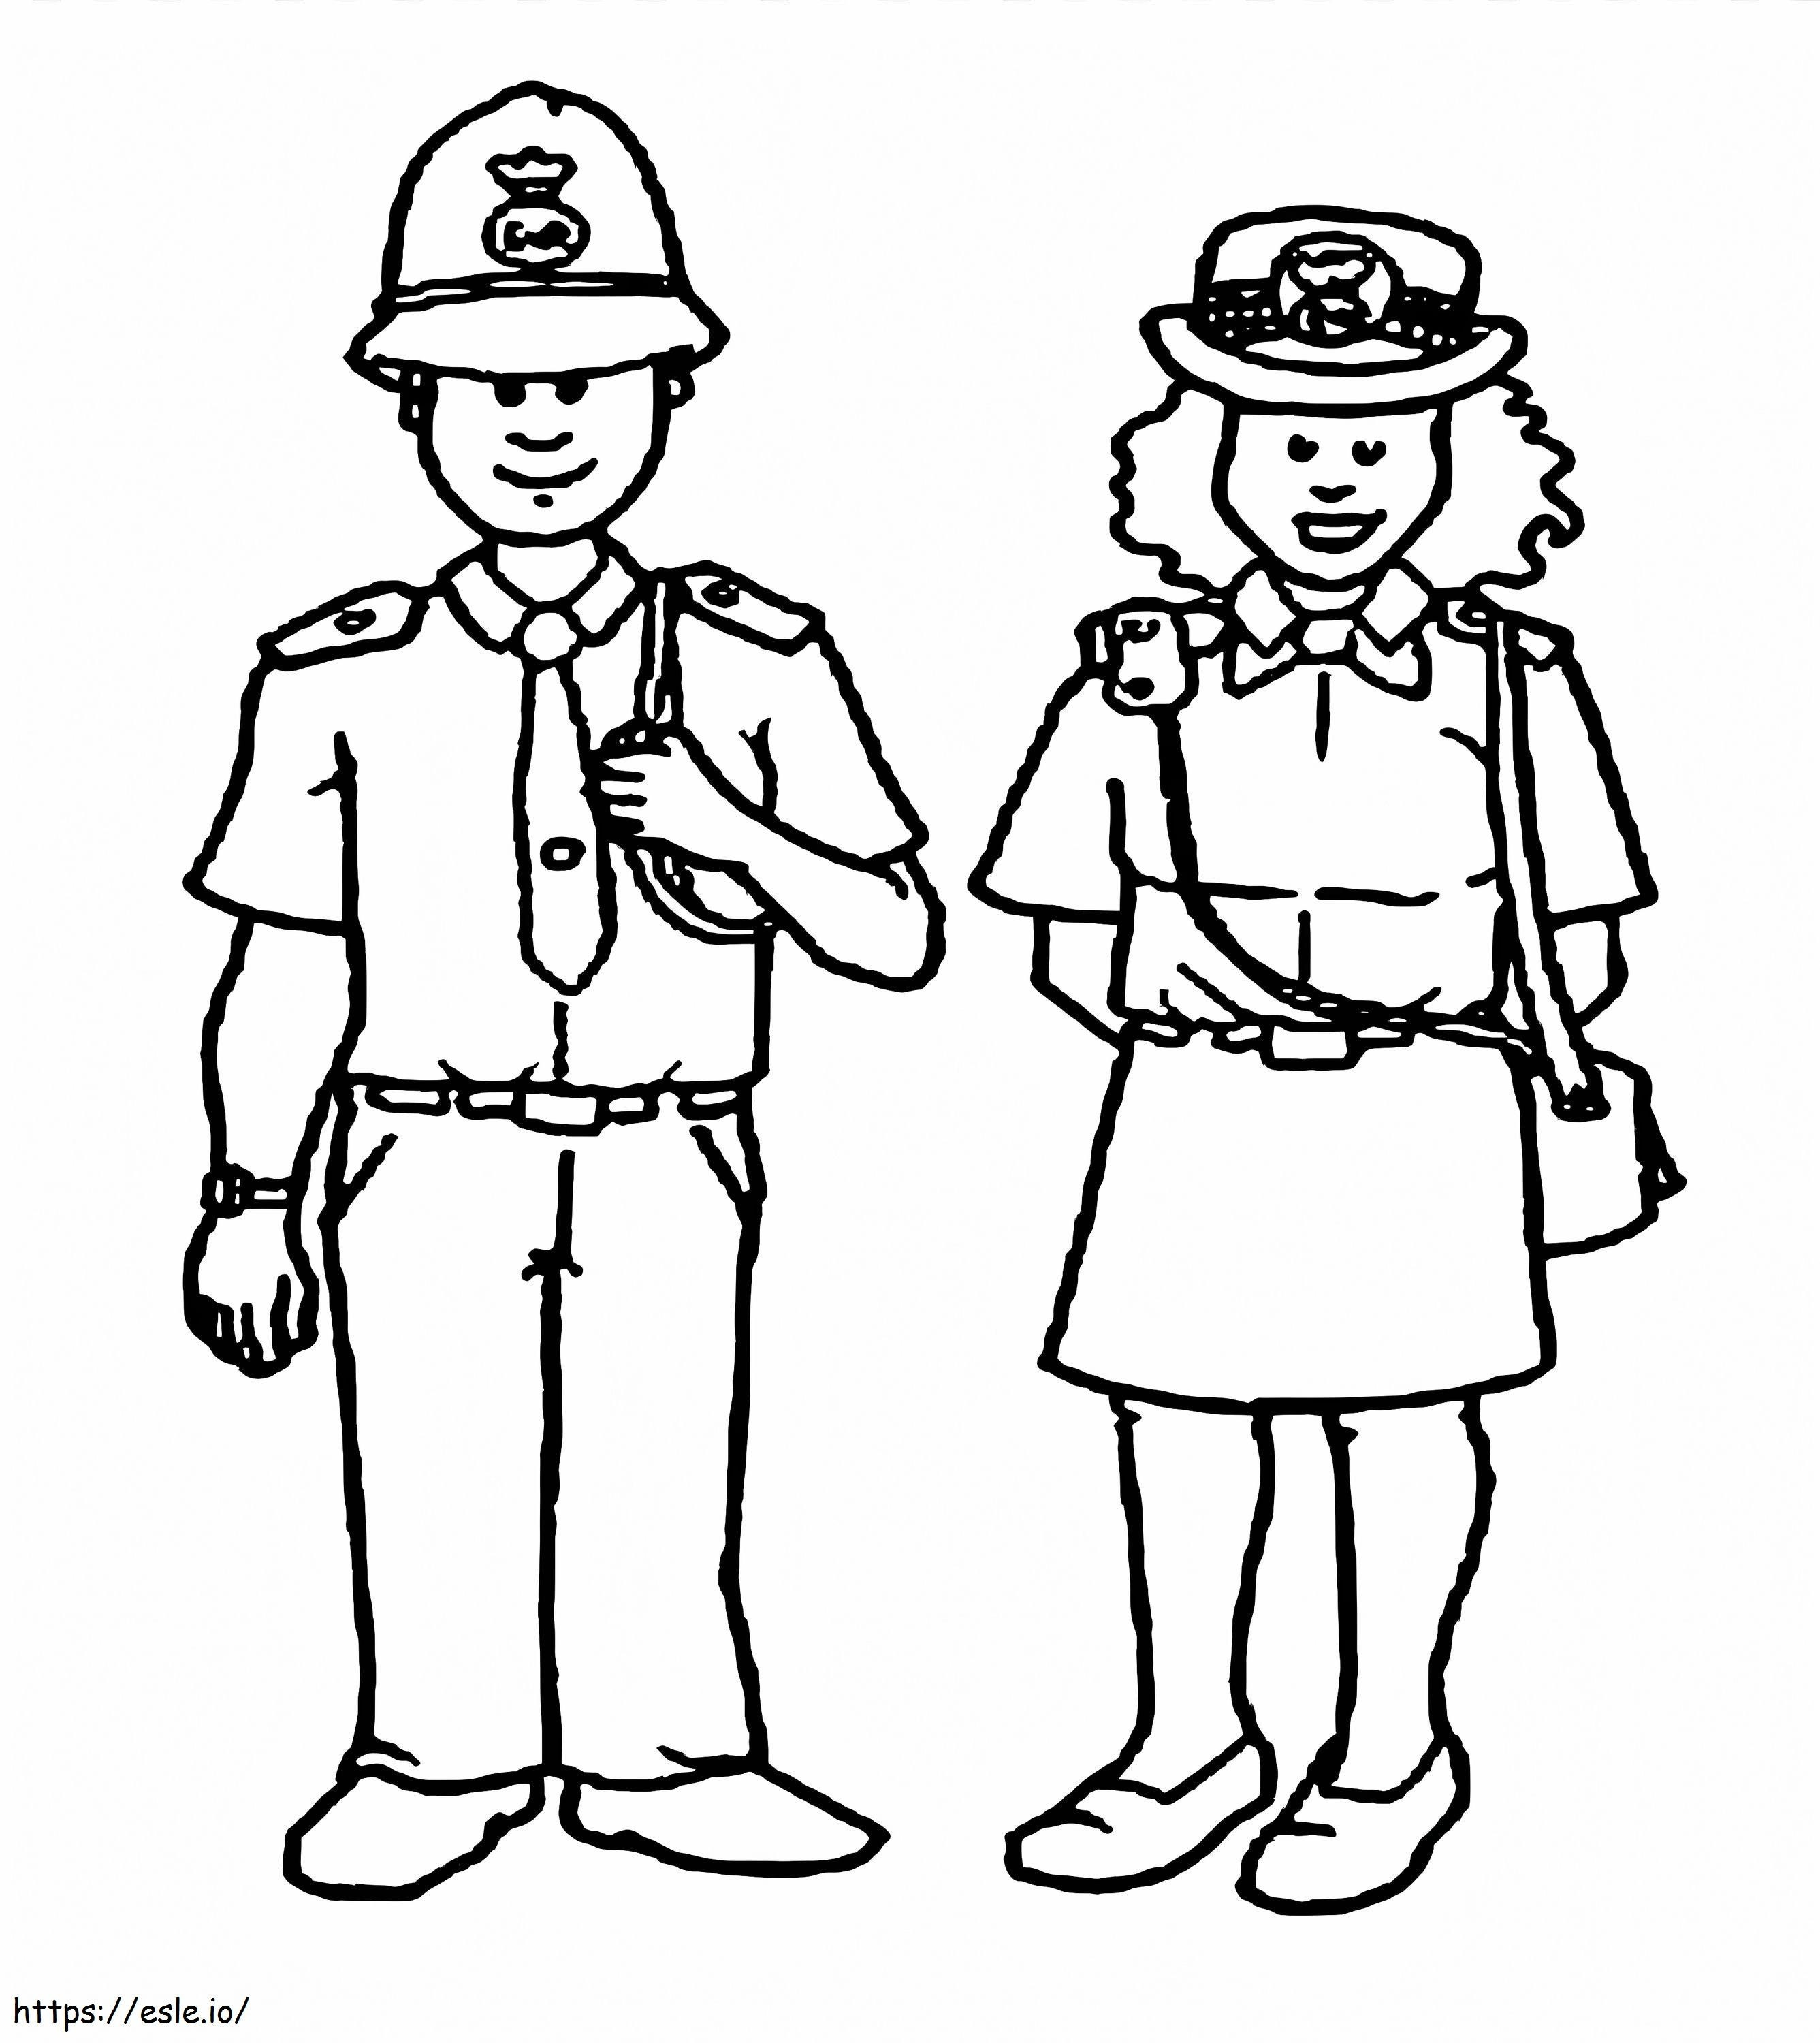 Desenho de polícia e mulher para colorir